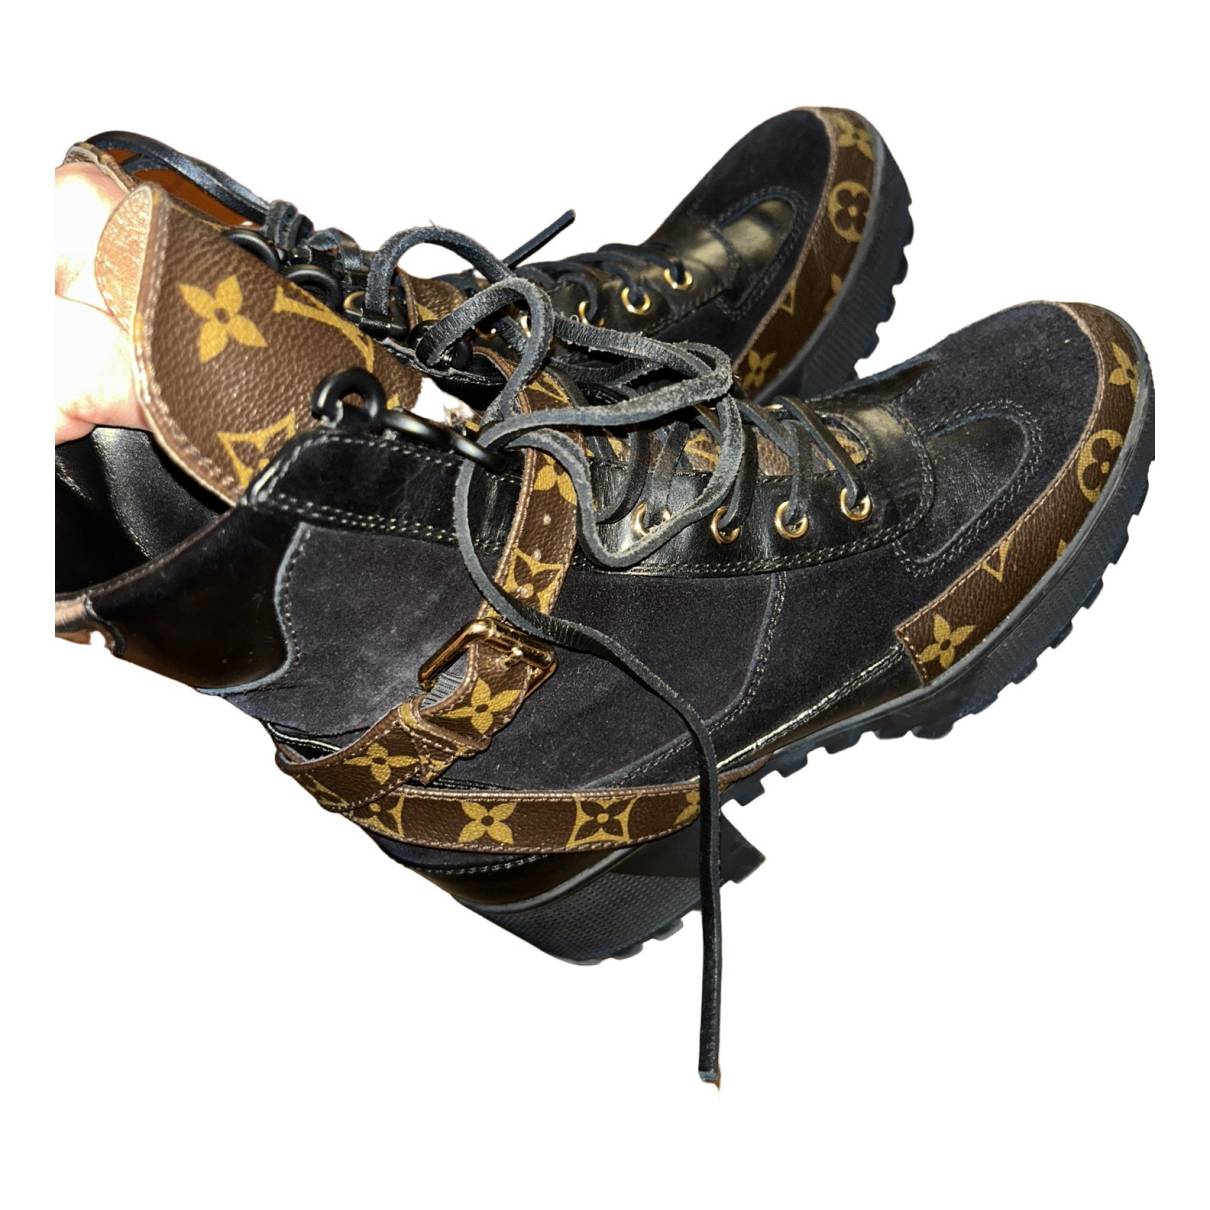 Lauréate ankle boots Louis Vuitton Black size 36.5 EU in Suede - 31546631